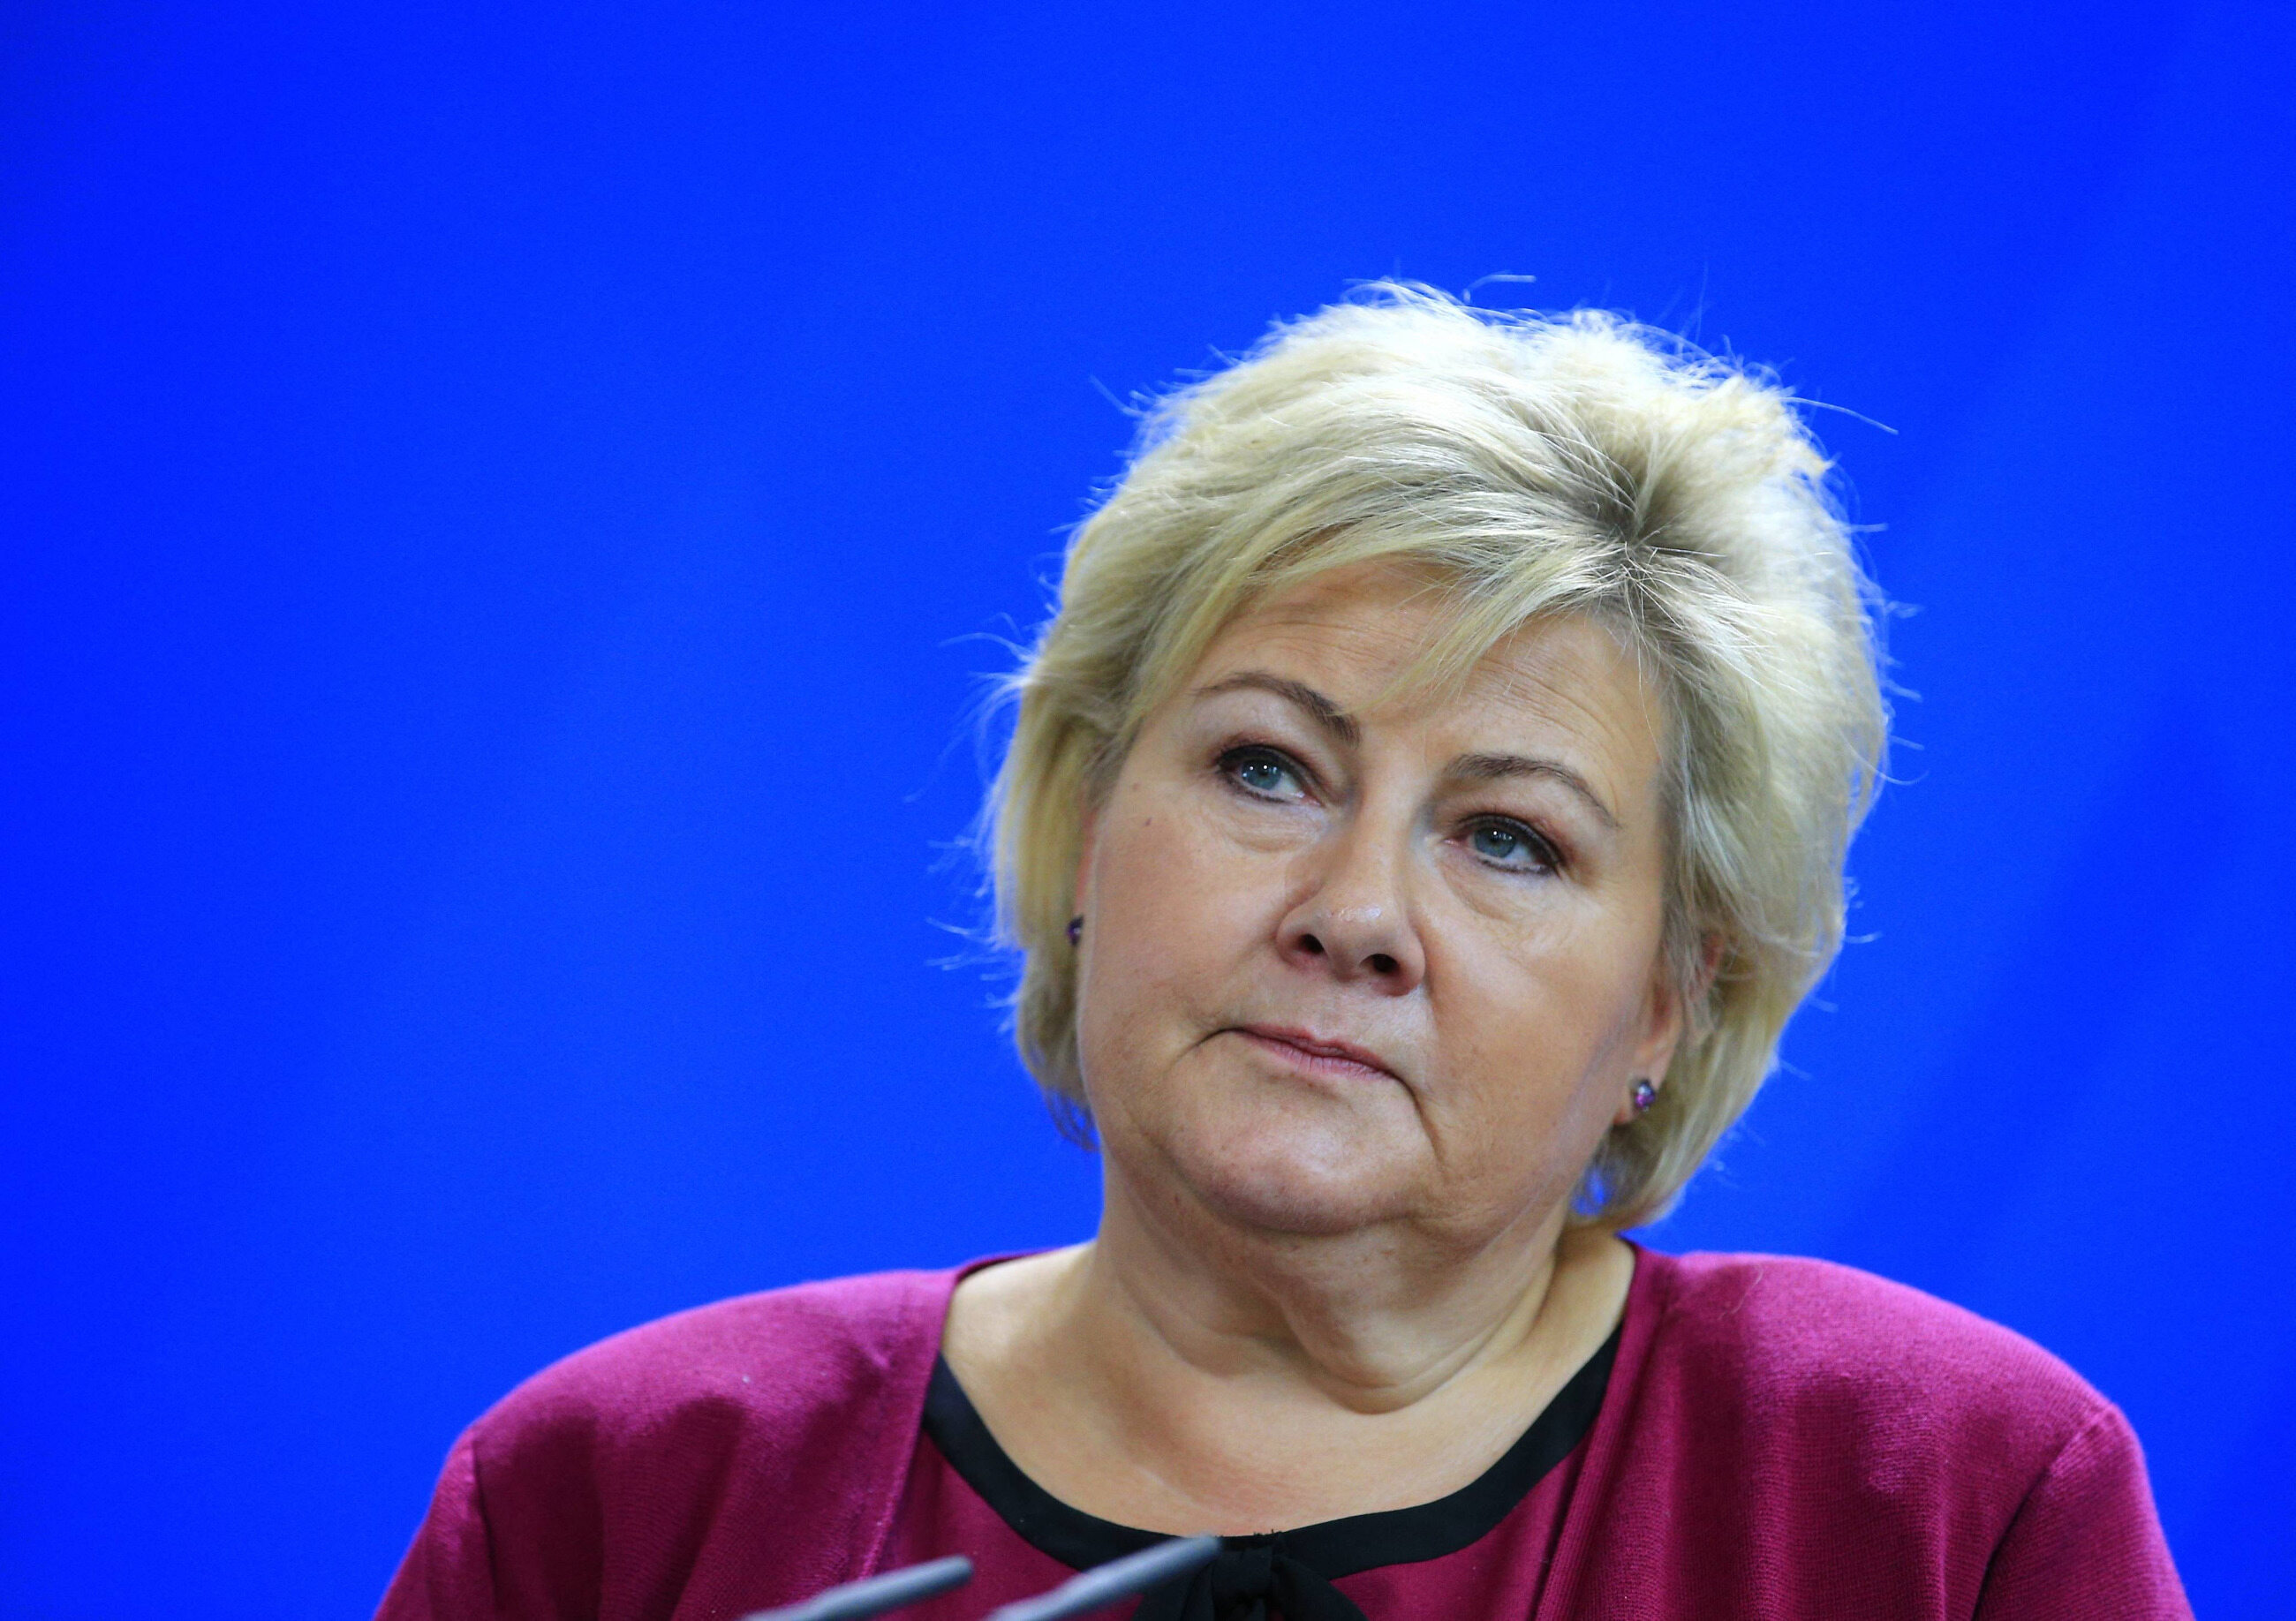 Statsminister Erna Solberg har brutt restriksjonene for koronaviruset.  Hun feiret bursdagen sin høyt – Polityka Wprost